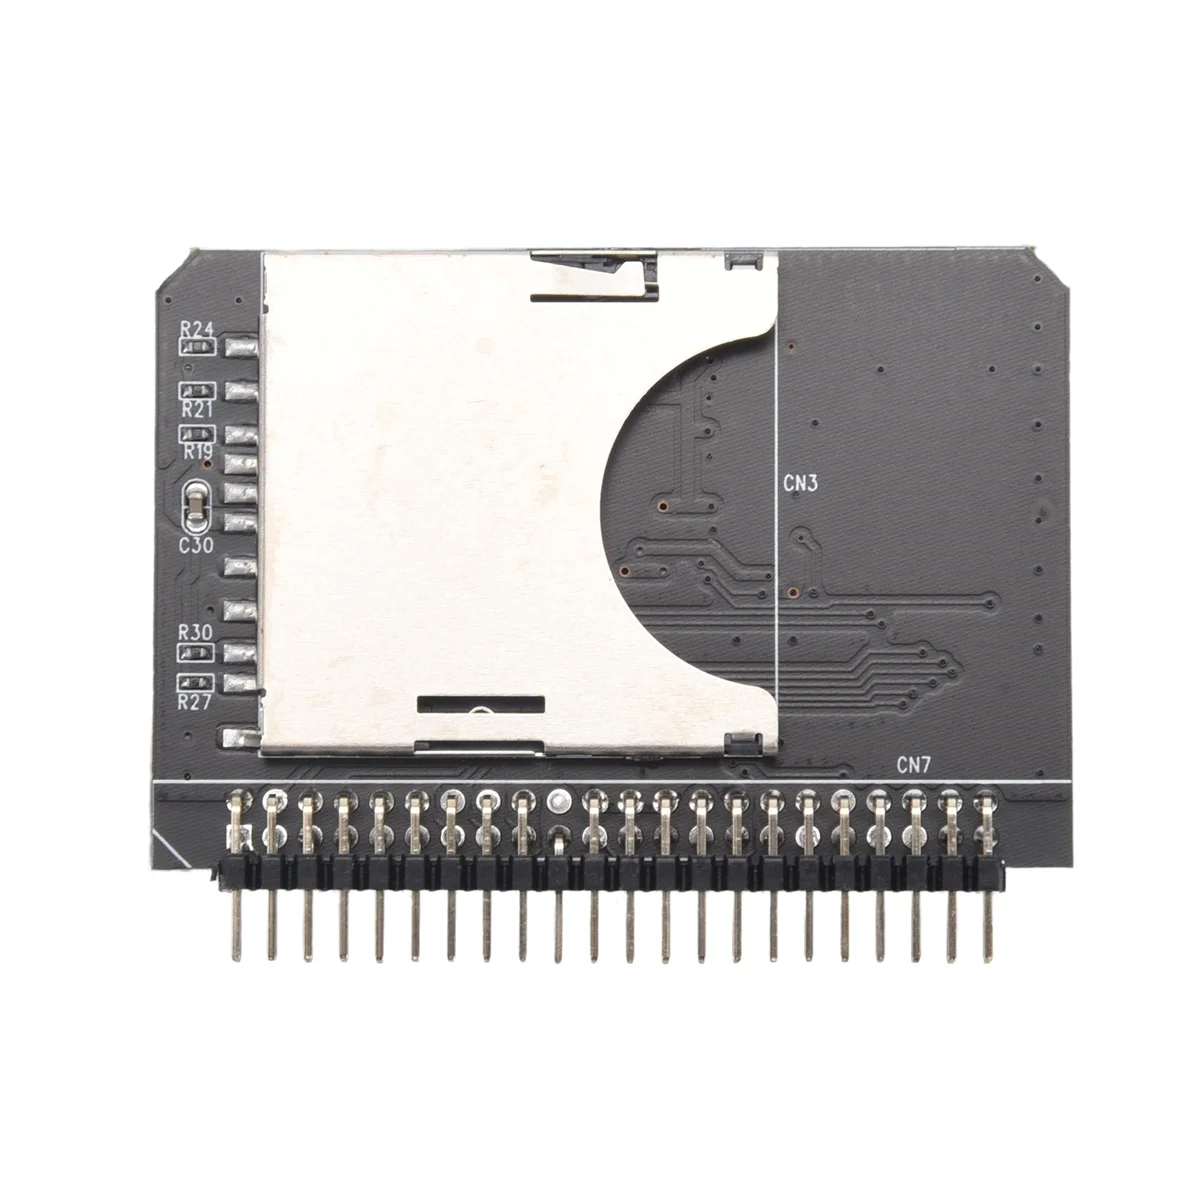 

Карта памяти SD/SDHC/SDXC/MMC для ноутбука 2,5 дюйма, цифровой адаптер для SD/SDHC/SDXC/MMC с 44 Pin на IDE Male, конвертер SD 3,0, адаптер для жесткого диска, карта